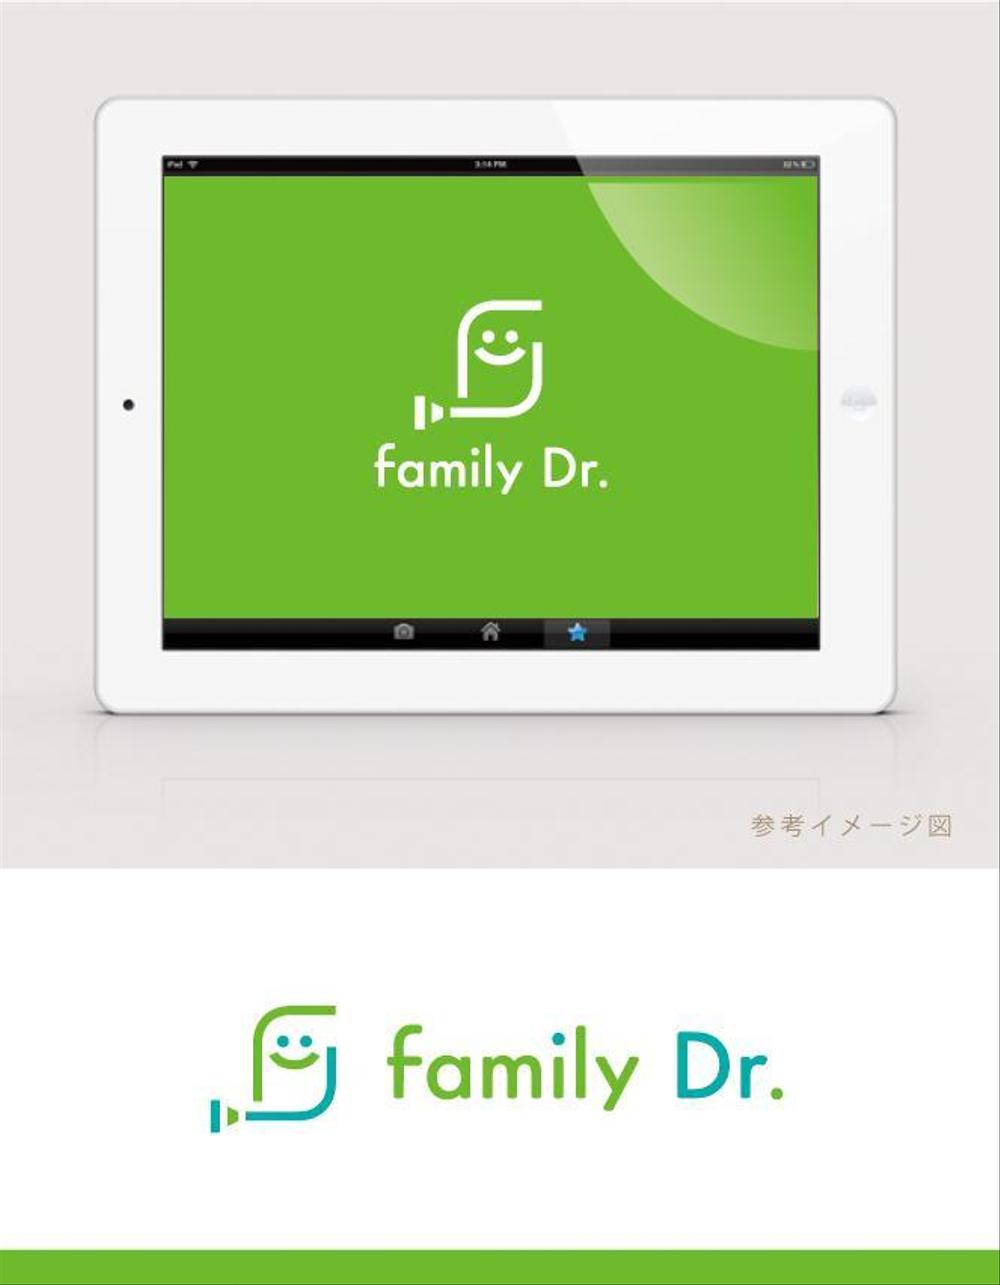 医療系アプリ「family Dr.」のロゴ